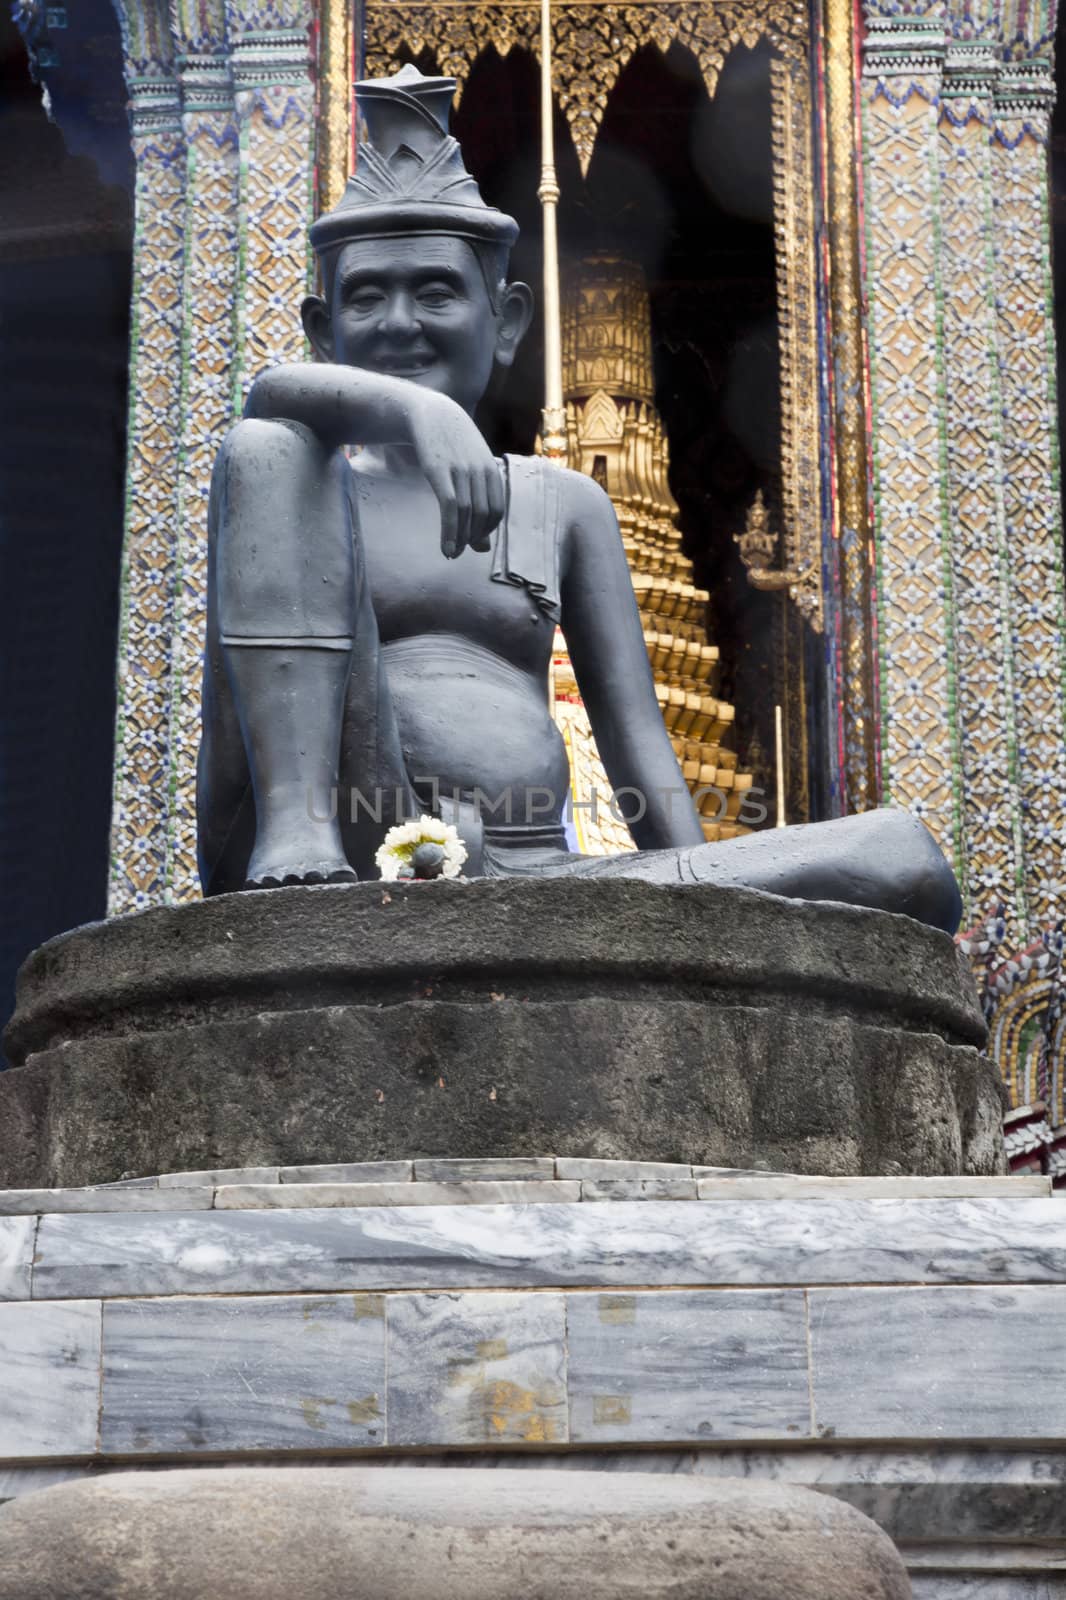 statue of hermit in front of wat phra kaew, bangkok, thailand